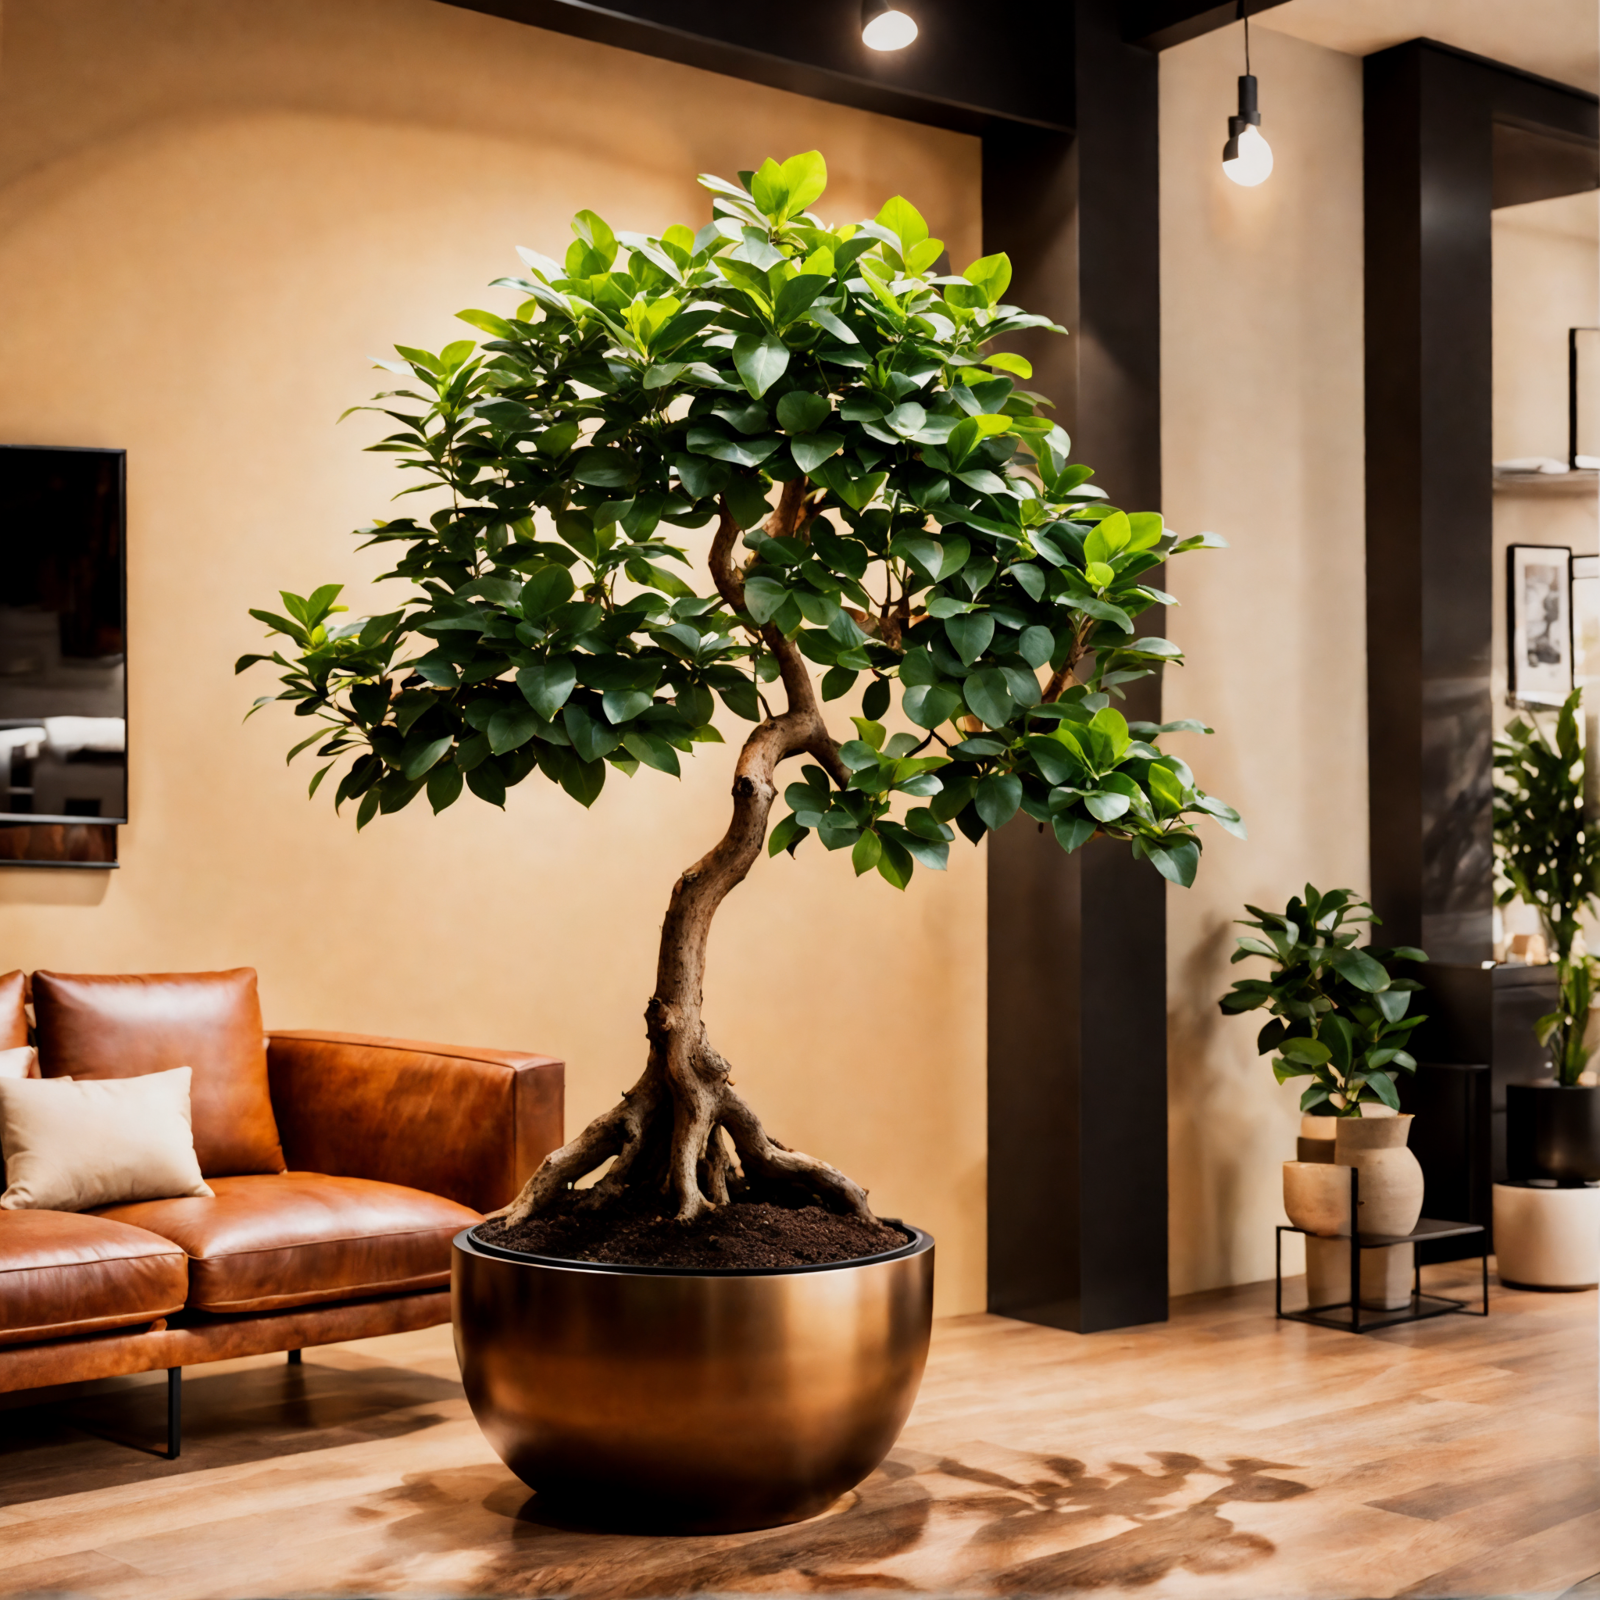 Ficus microcarpa in planter beside brown floor in modern, well-lit living room.